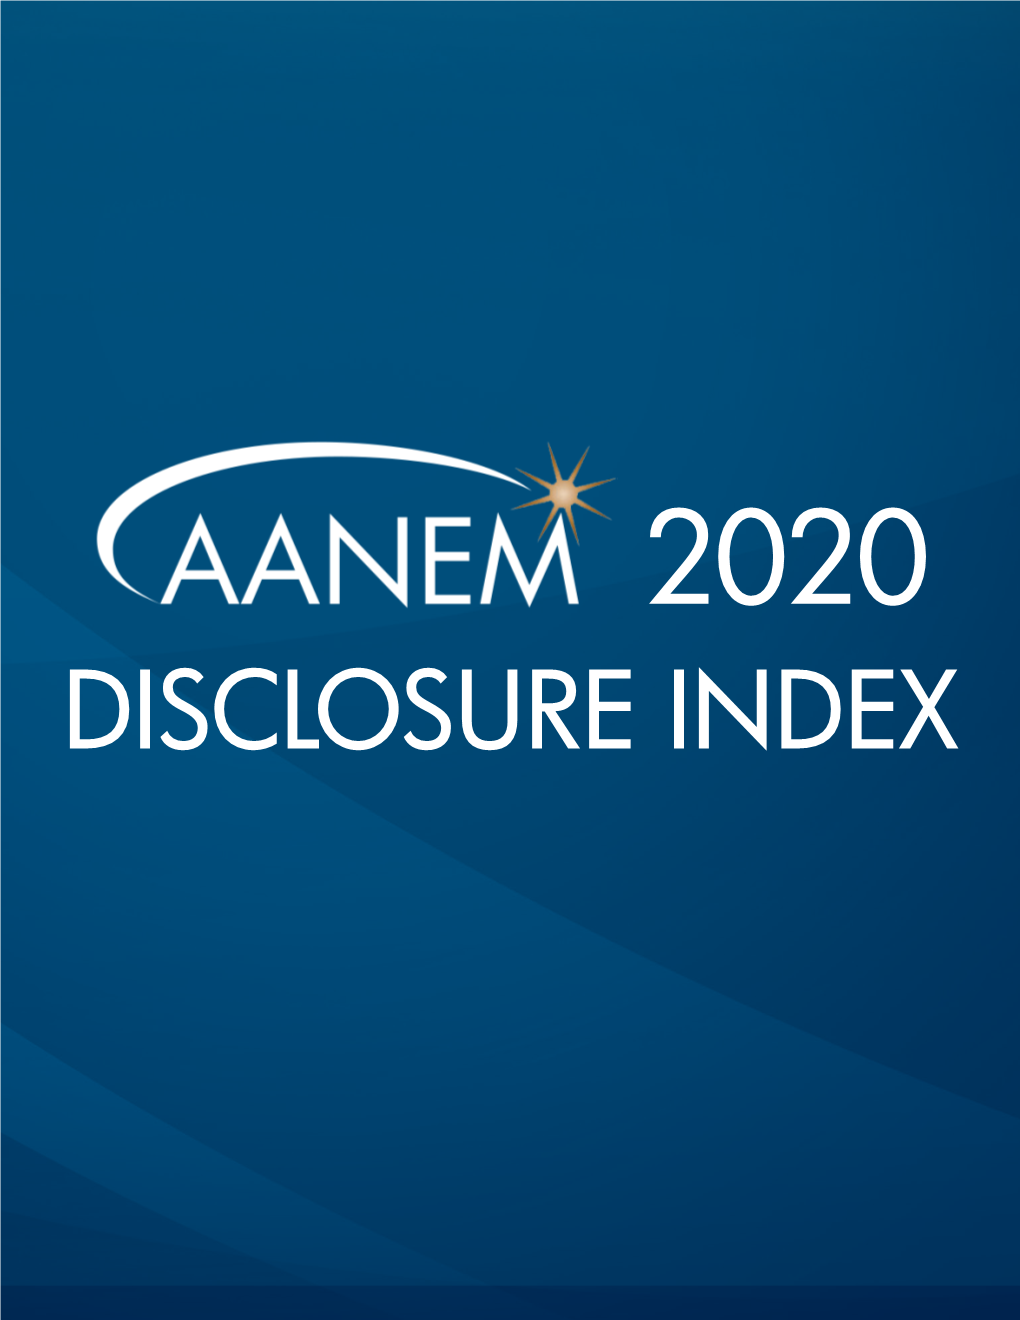 Disclosure Index